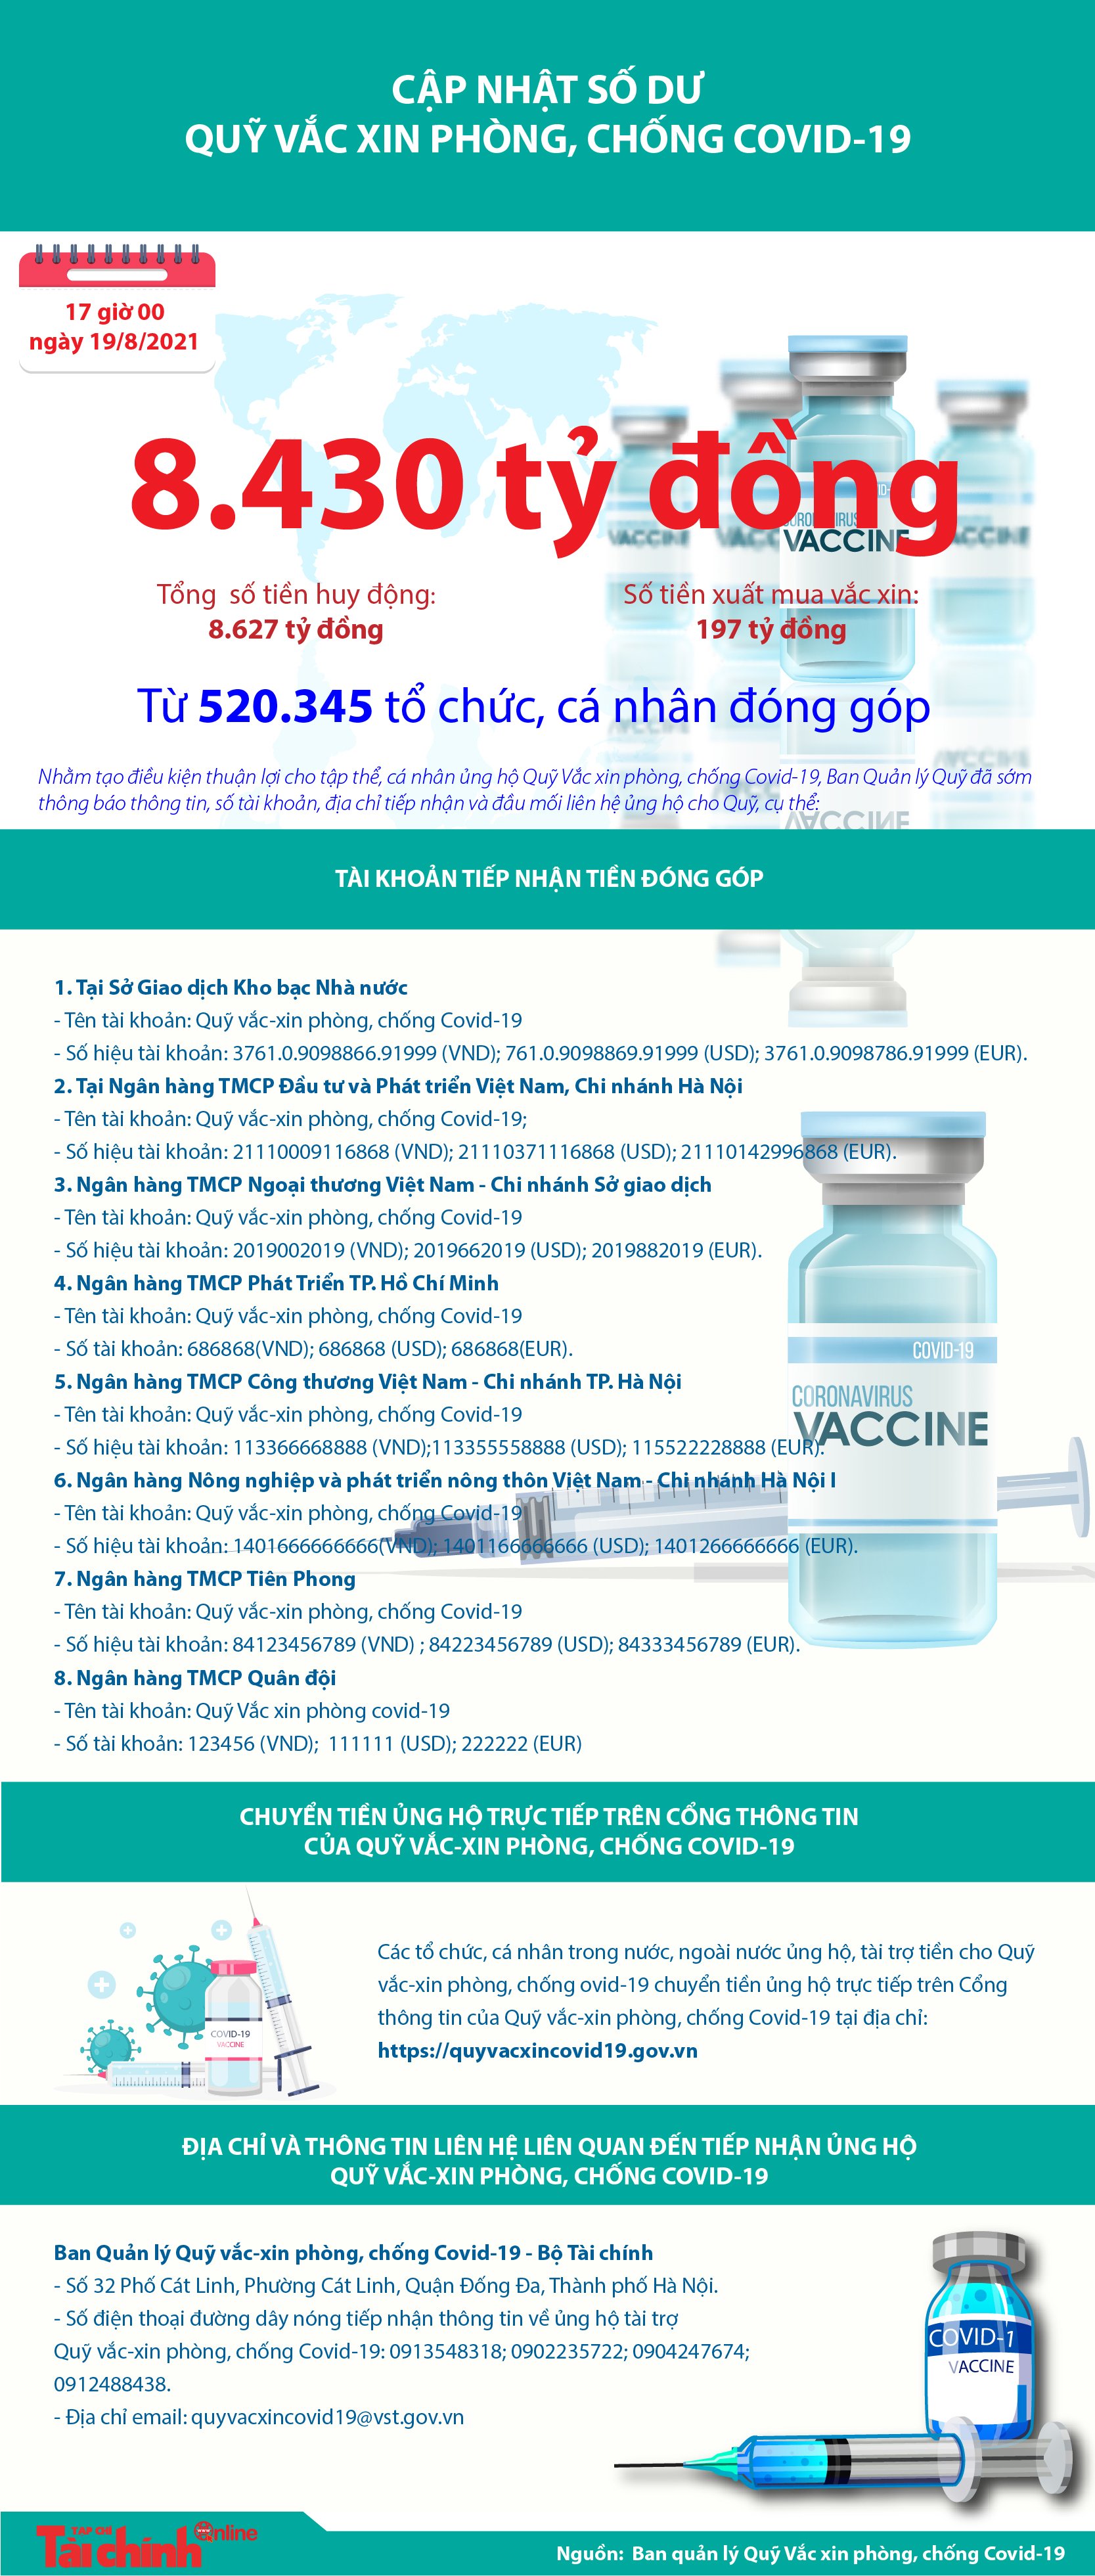 [Infographics] Quỹ Vắc xin phòng, chống COVID-19 còn dư 8.430 tỷ đồng - Ảnh 1